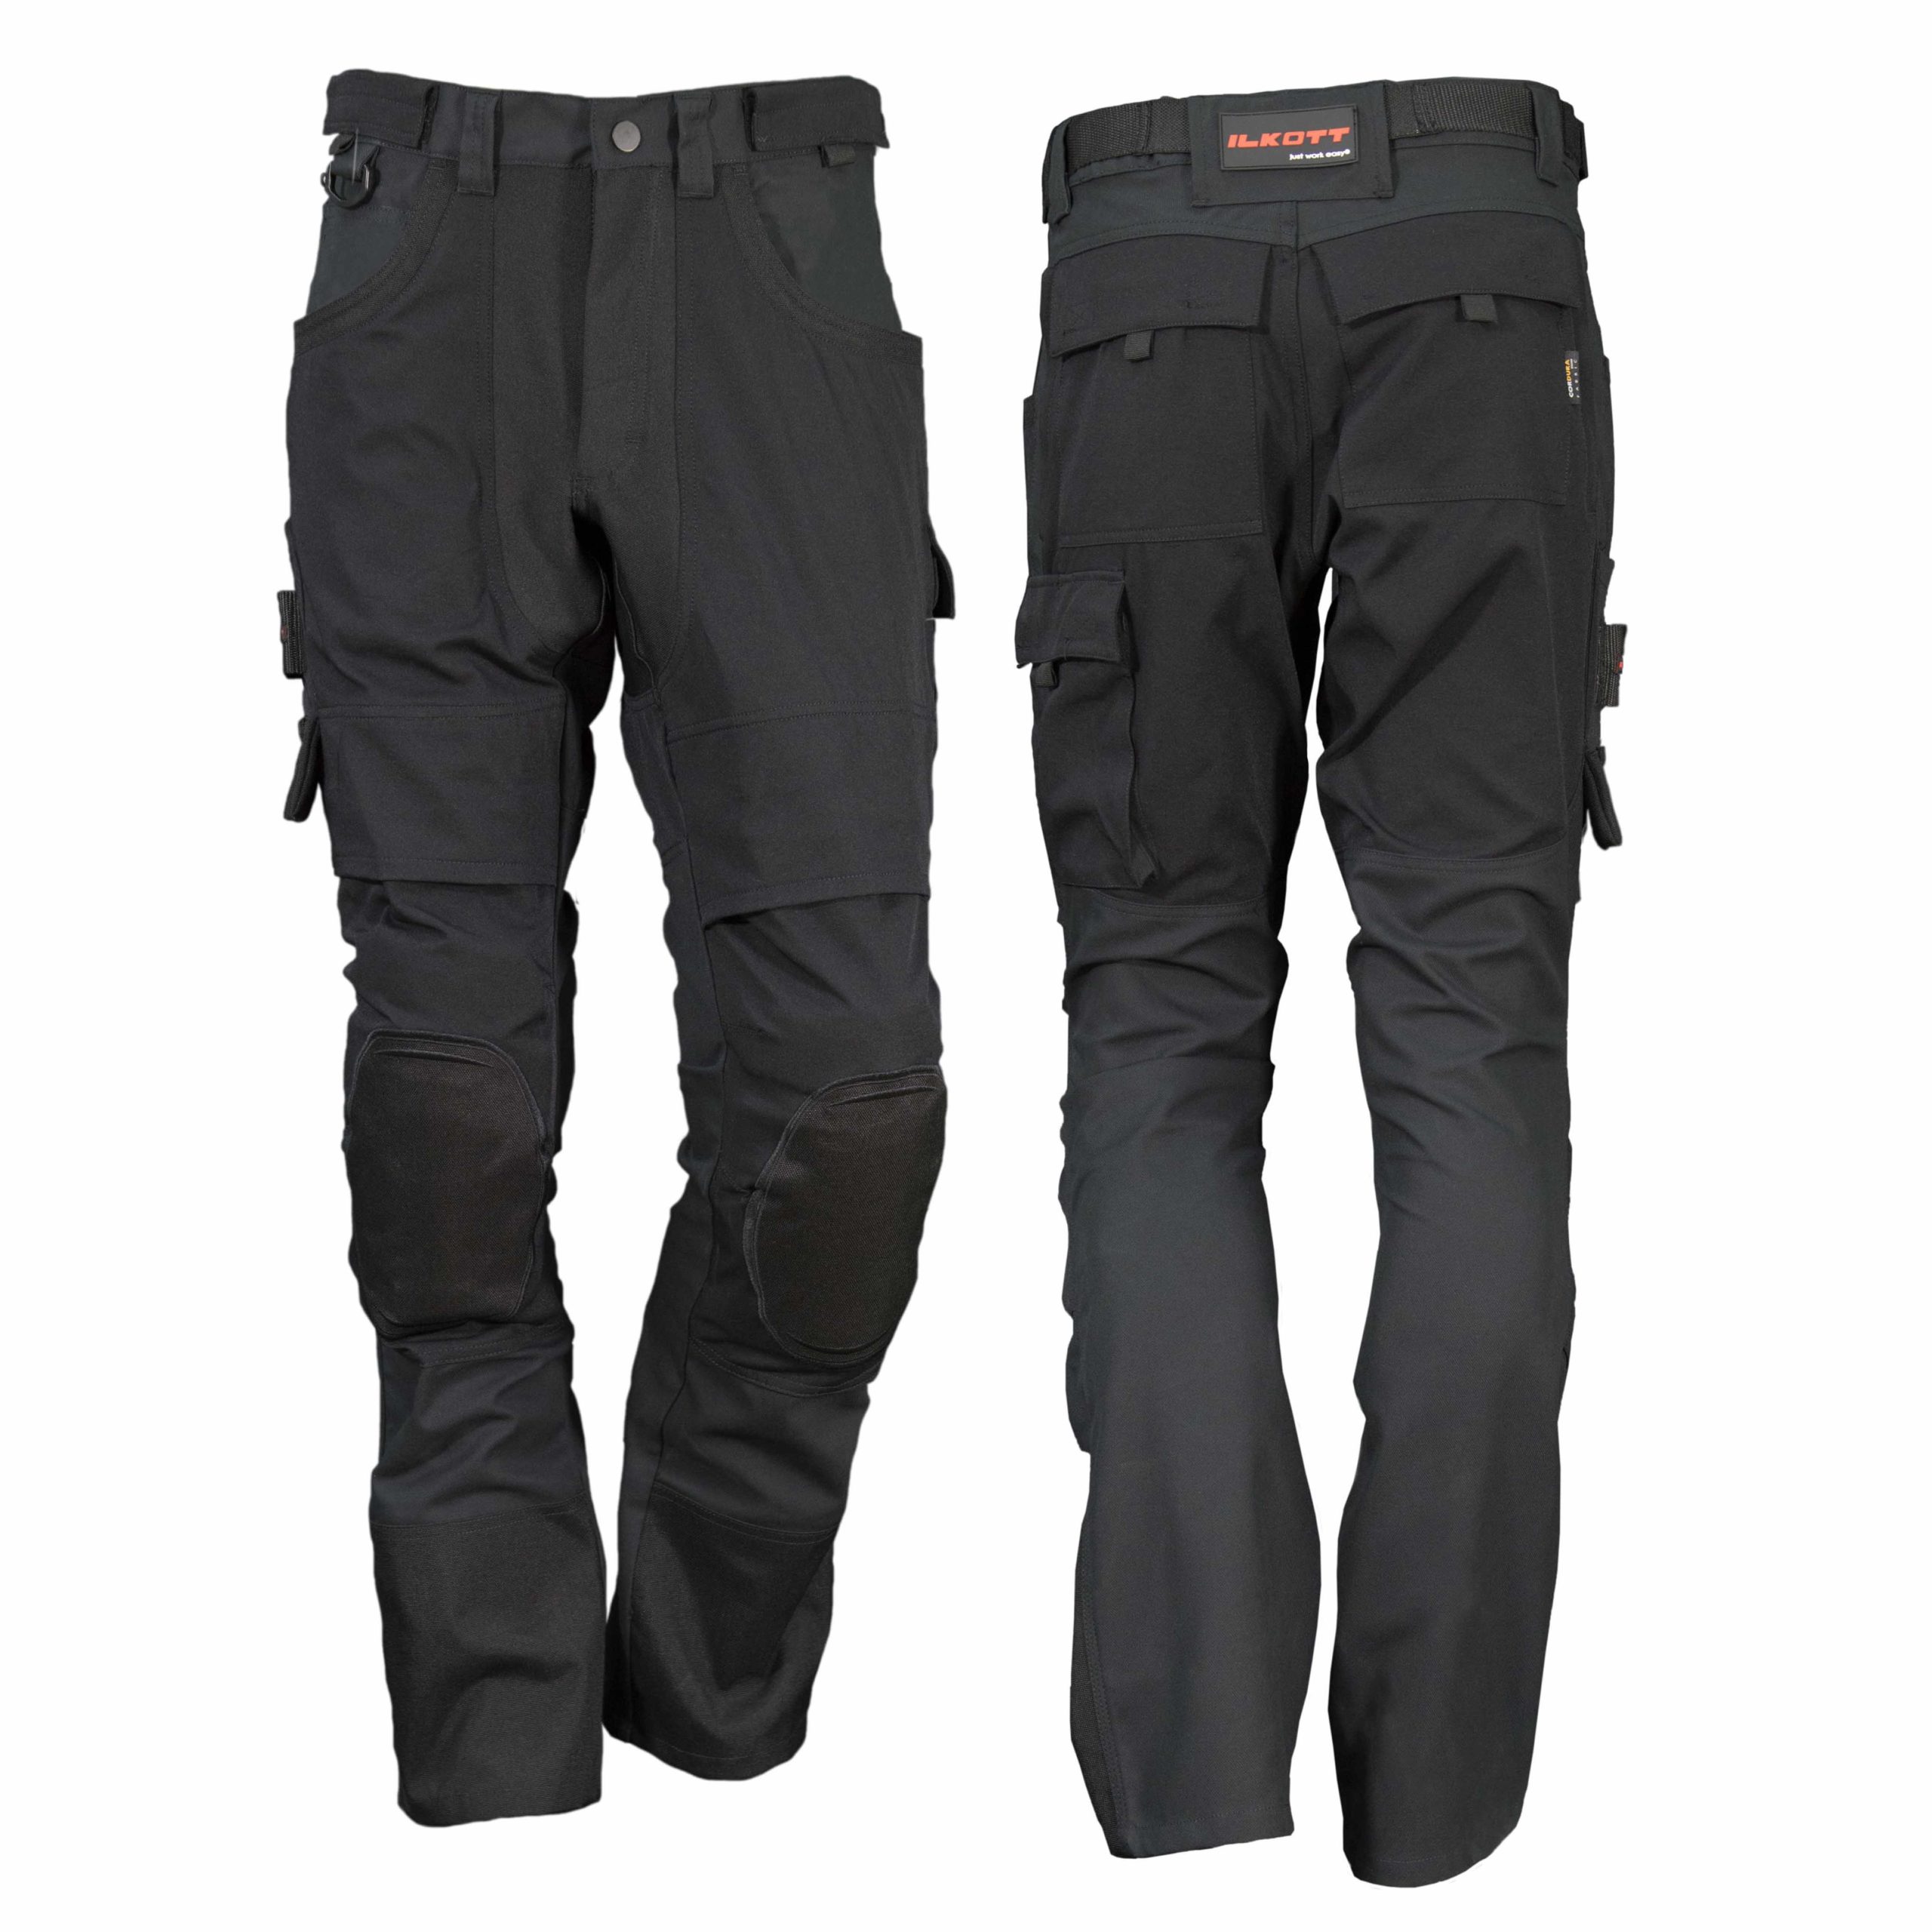 Pantalon de travail ergonomique avec genouillères - Ilkott